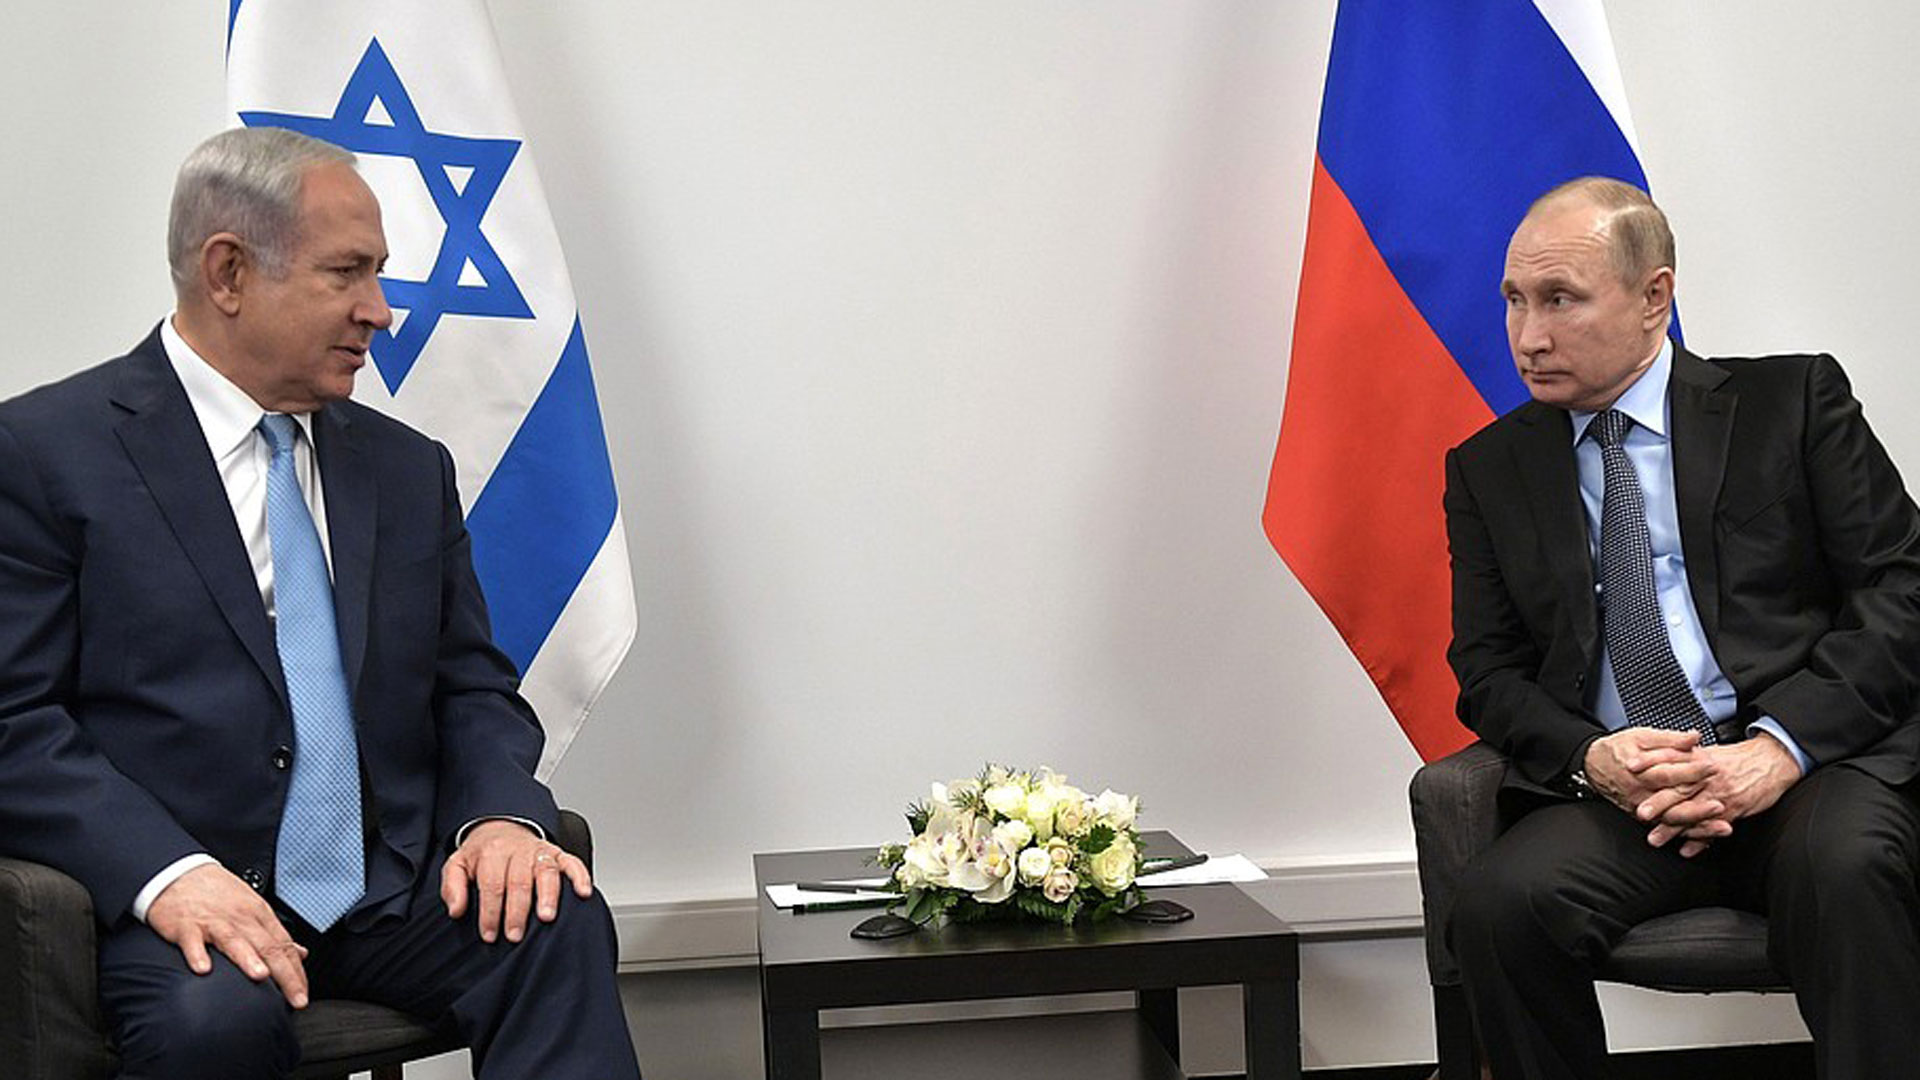 Der israelische Premier Netanjahu stimmt sich regelmäßig mit dem russischen Präsidenten Putin ab, wie hier am 30. Januar in Moskau